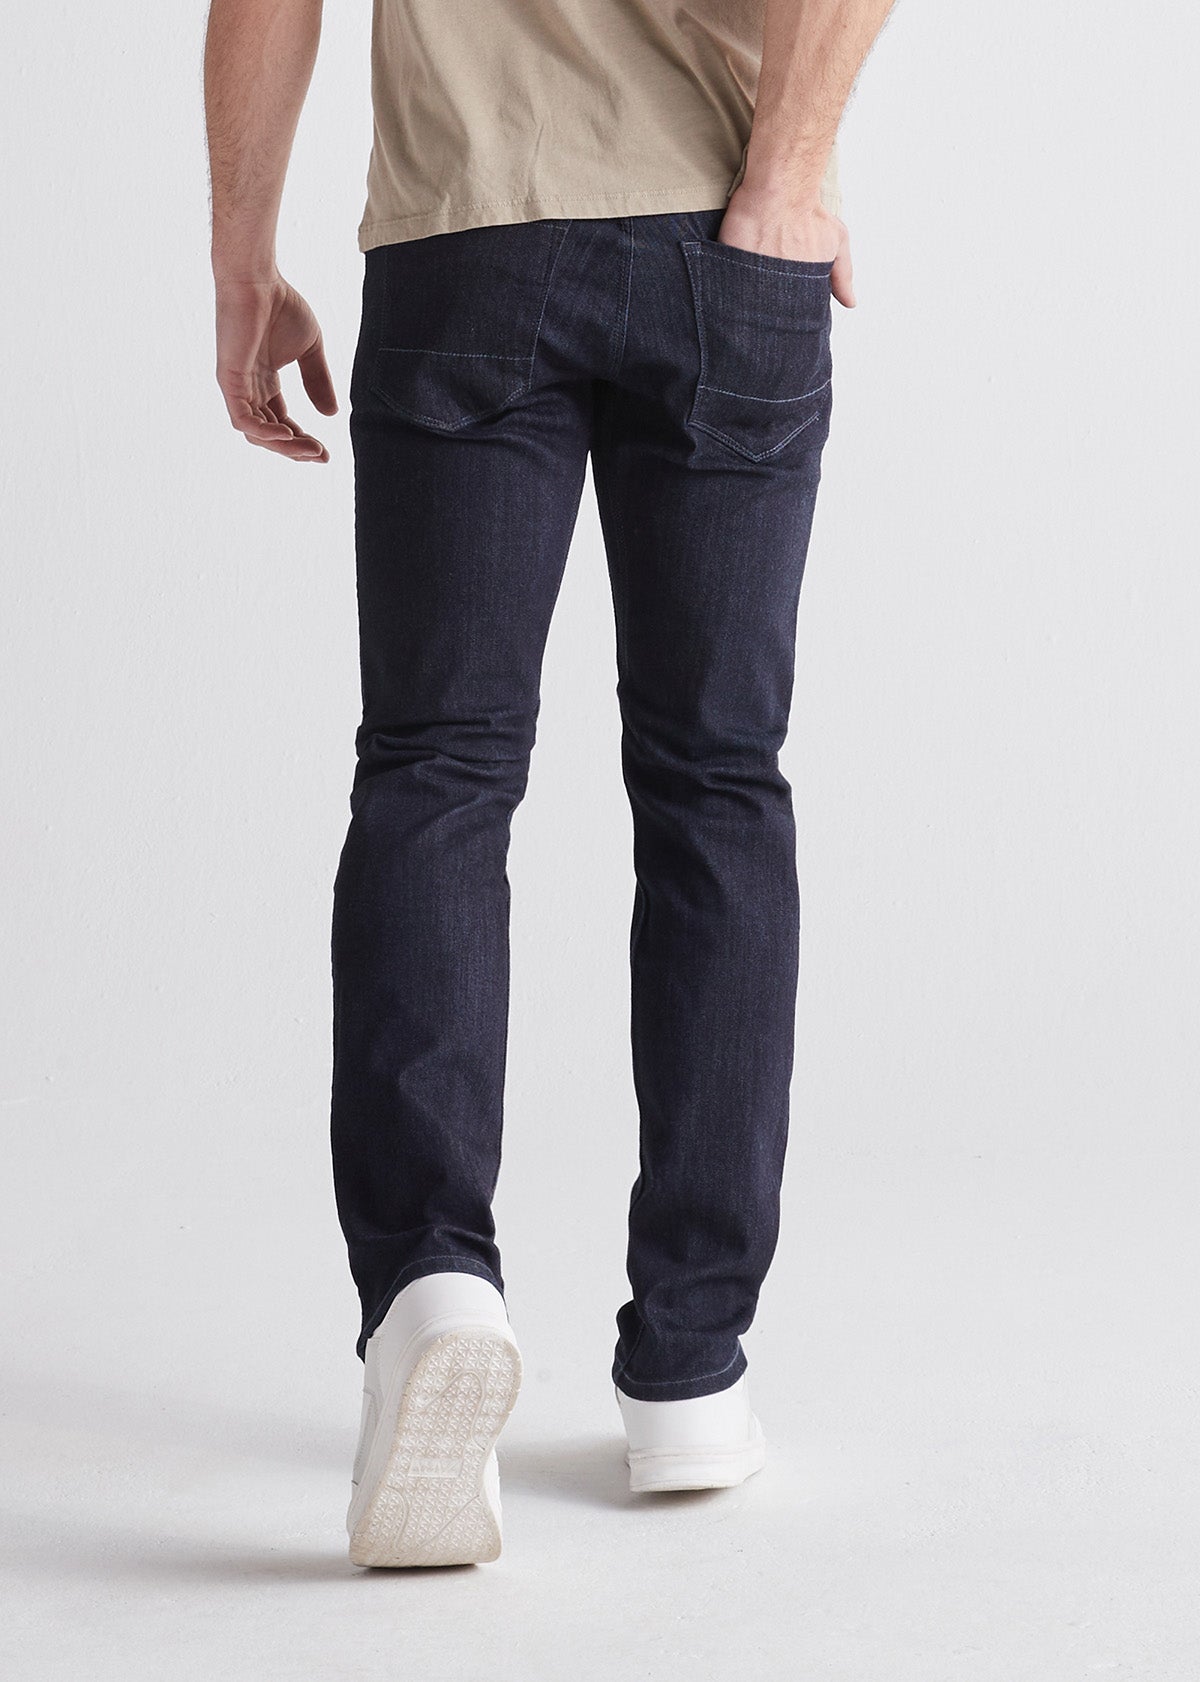 efterklang by Grønland Men's Blue Slim Fit Stretch Jeans – DUER